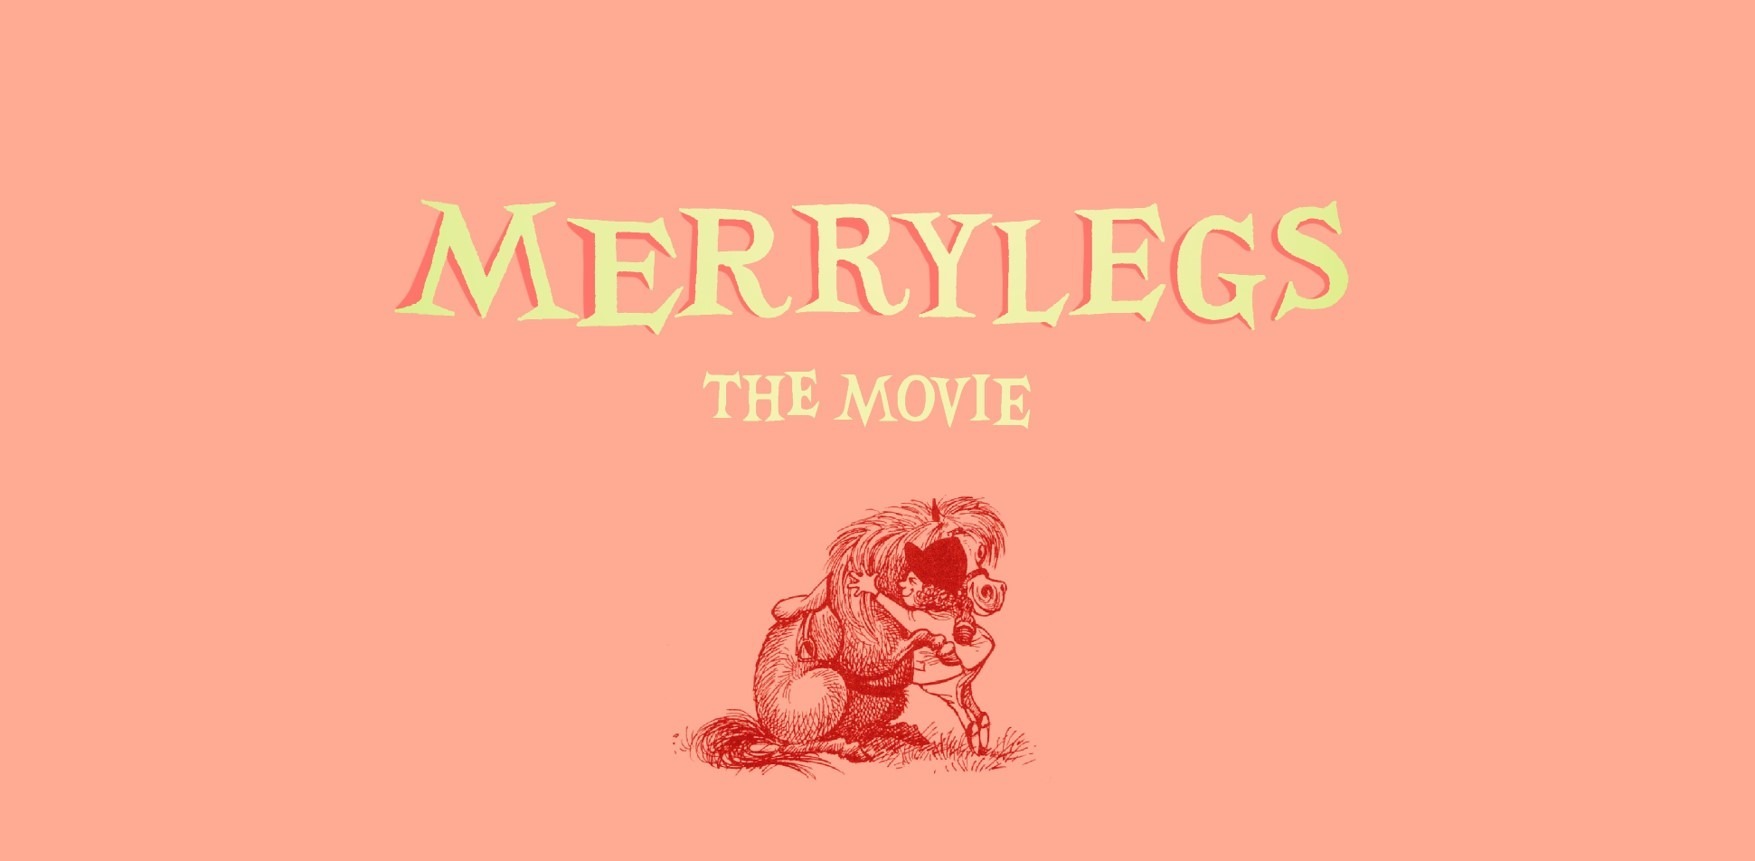 Merrylegs the Movie